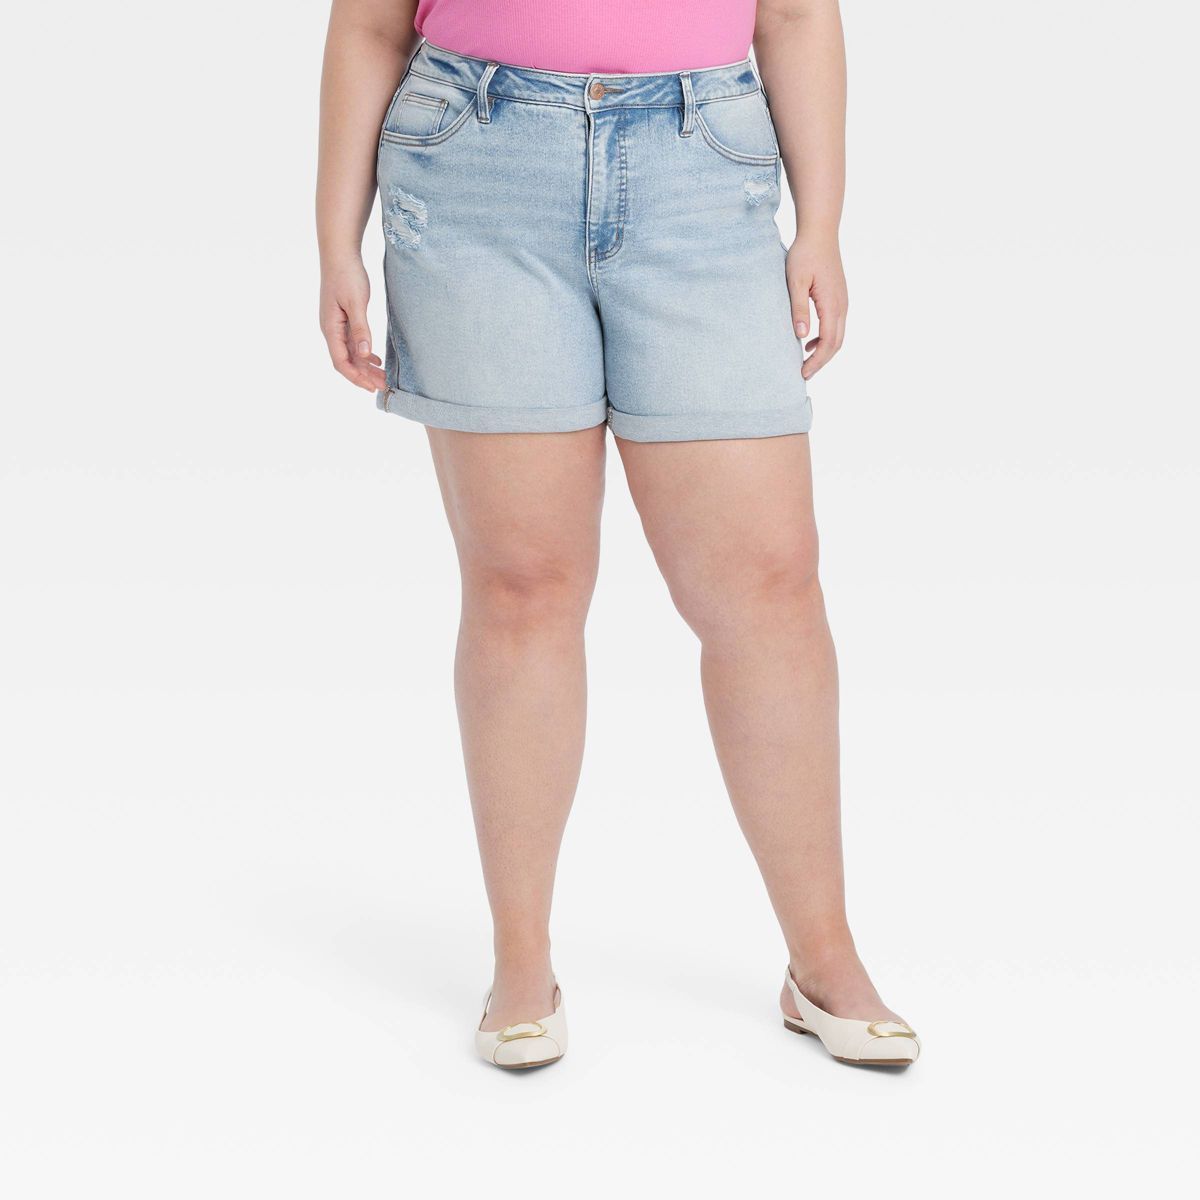 Women's High-Rise Midi Jean Shorts - Ava & Viv™ Light Wash 18 | Target